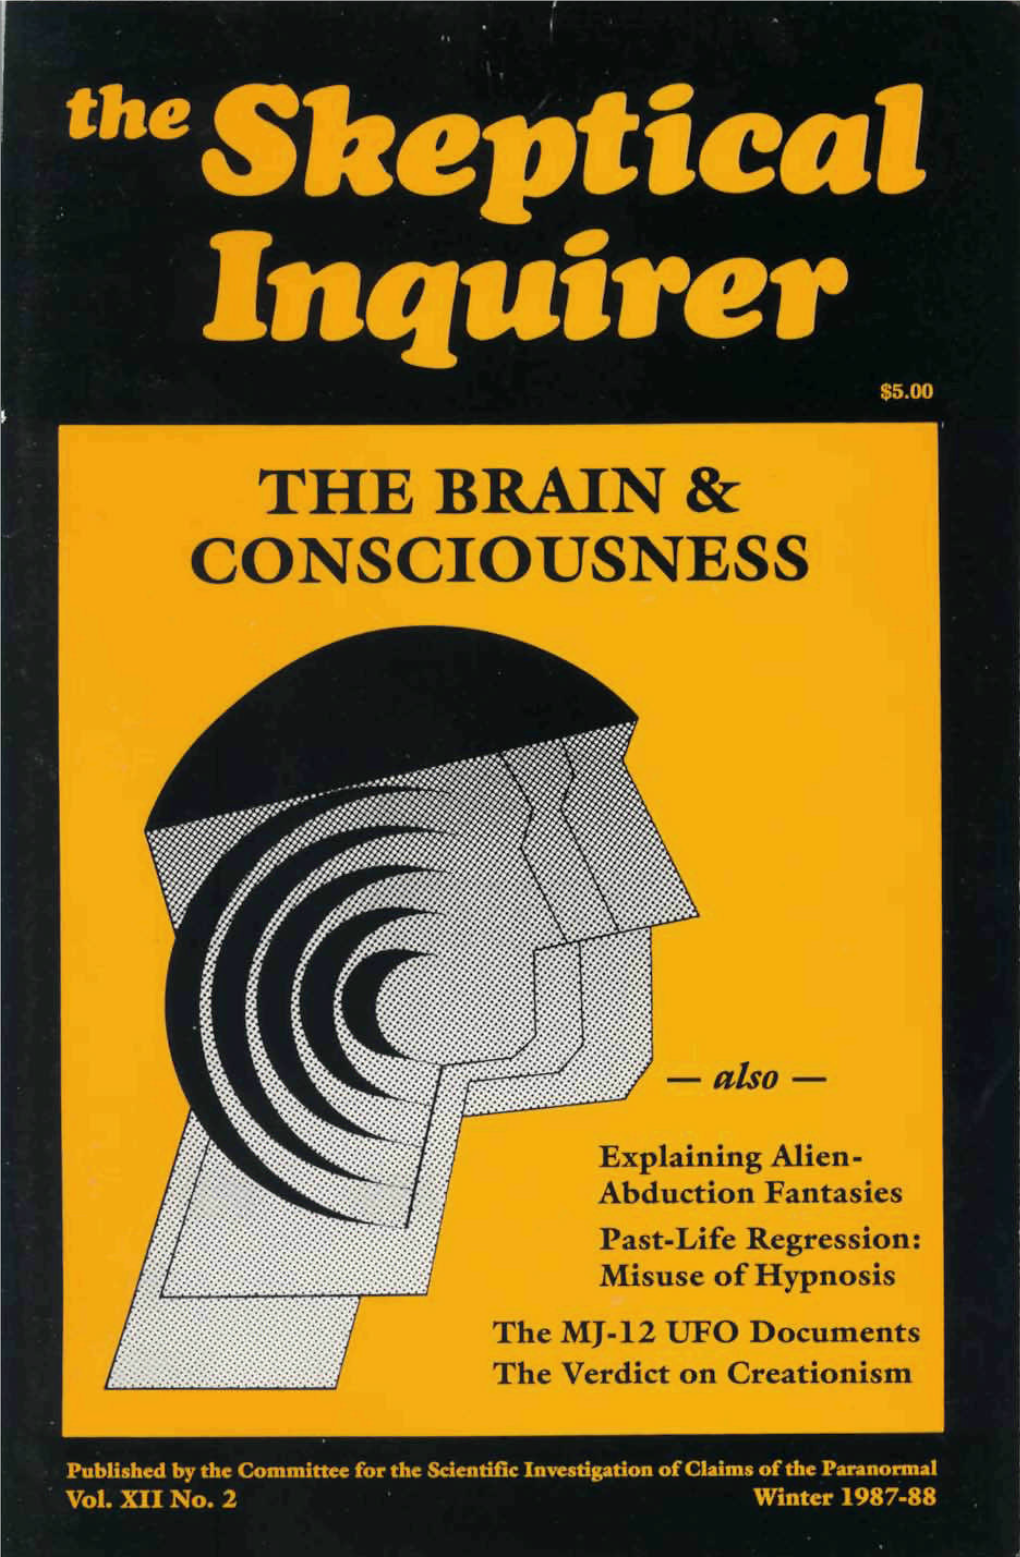 The Brain & Consciousness